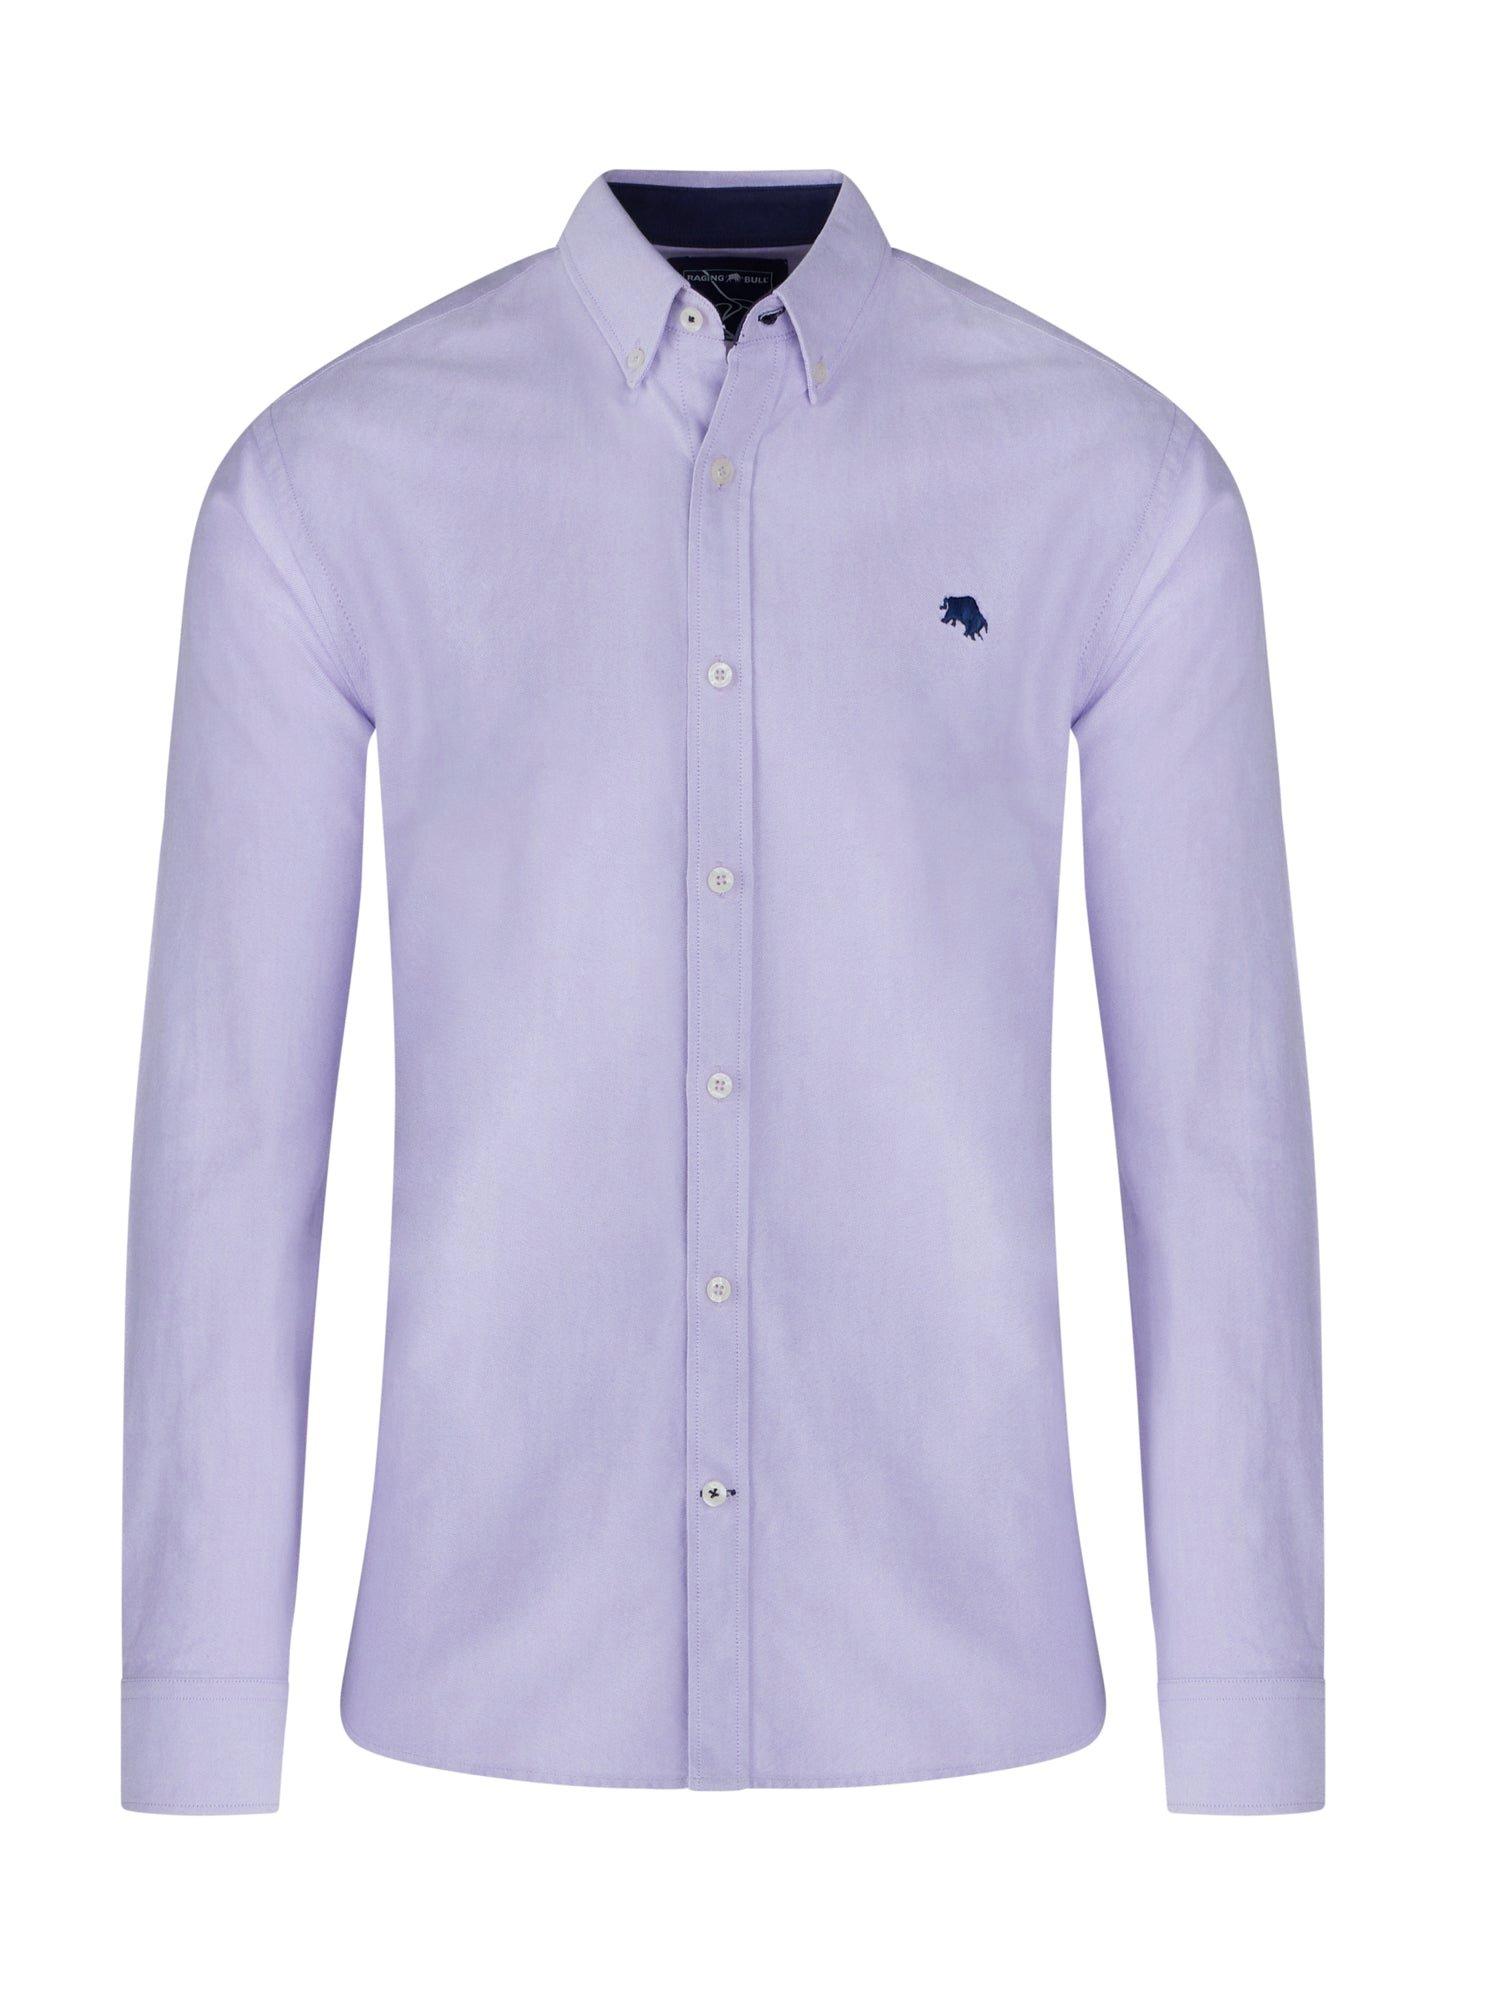 Классическая оксфордская рубашка с длинным рукавом Raging Bull, фиолетовый